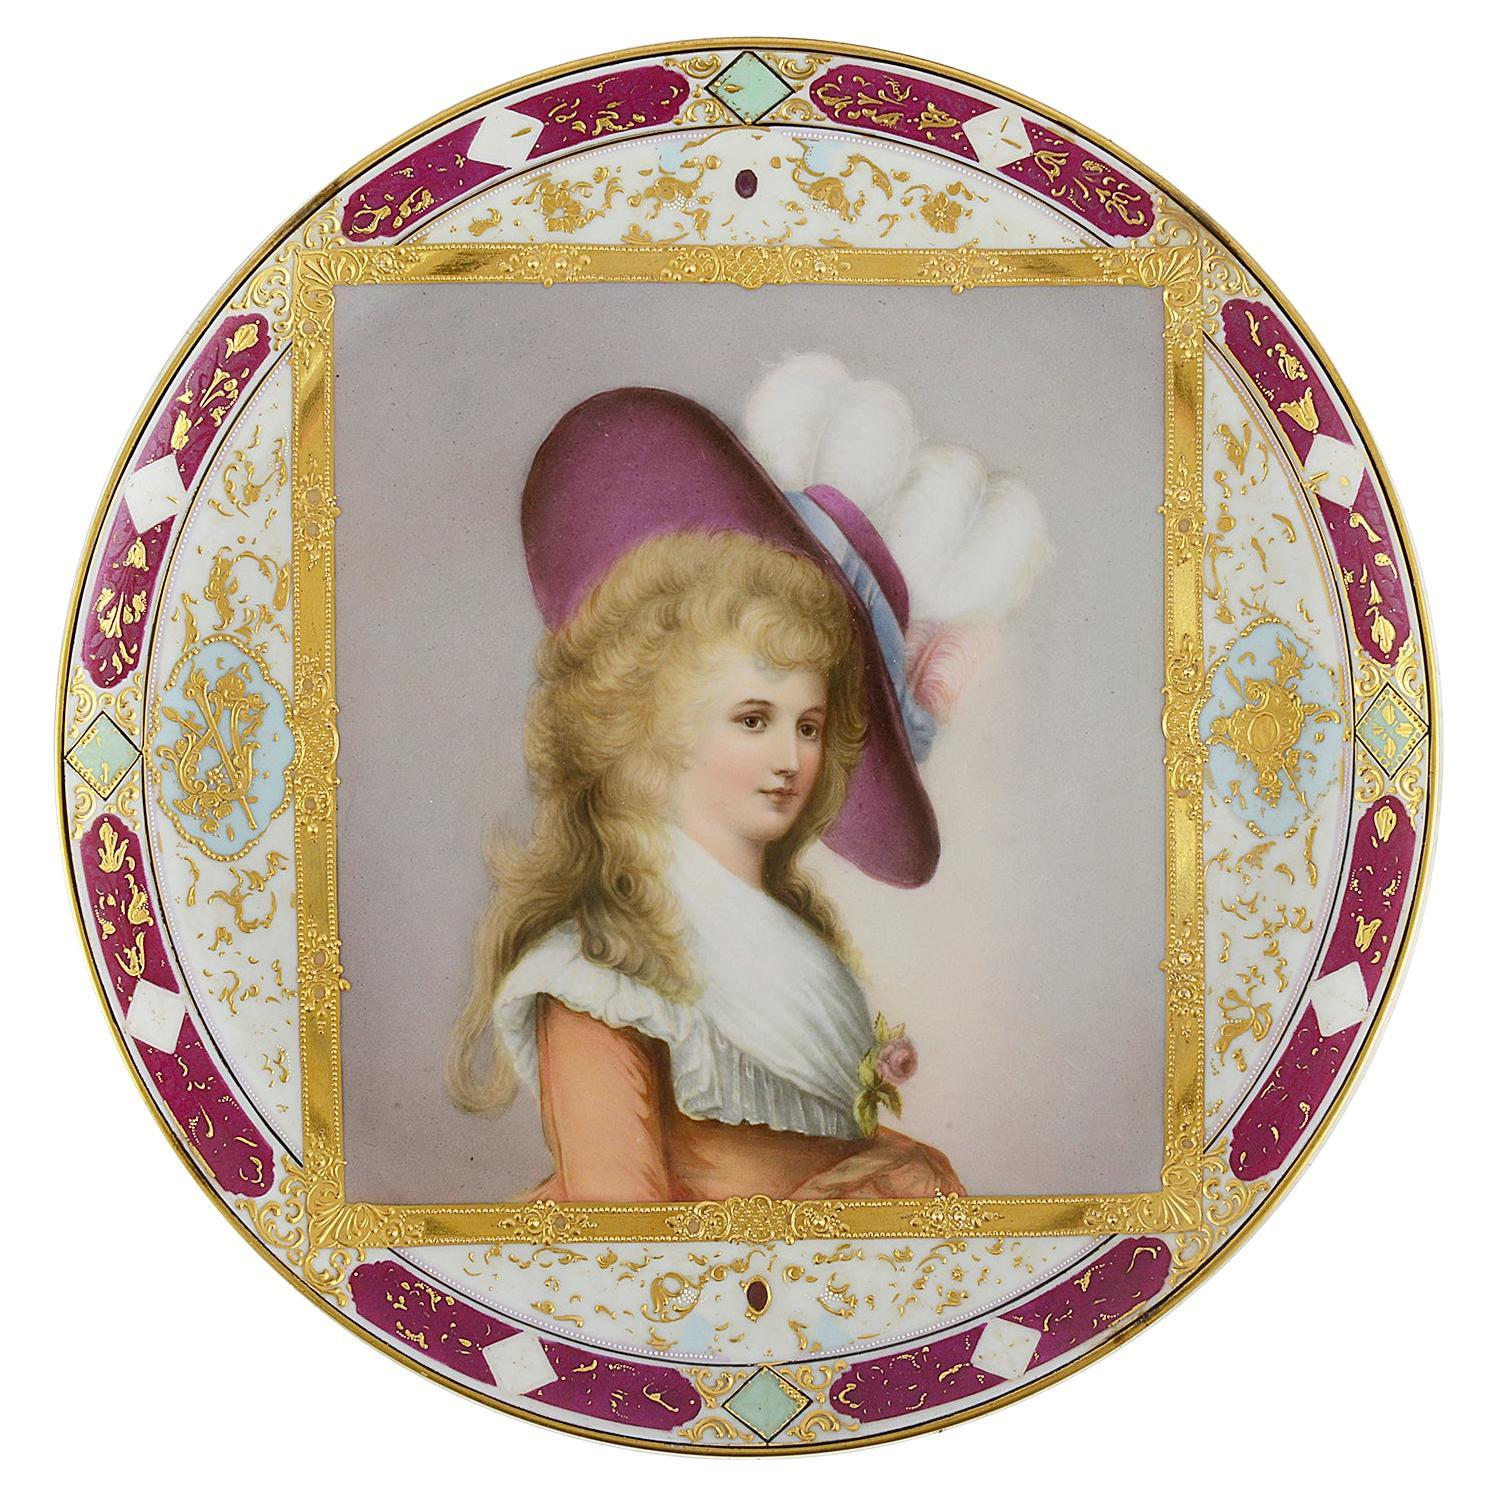 Assiette en porcelaine de style viennois de la fin du XIXe siècle, représentant la duchesse de Devonshire